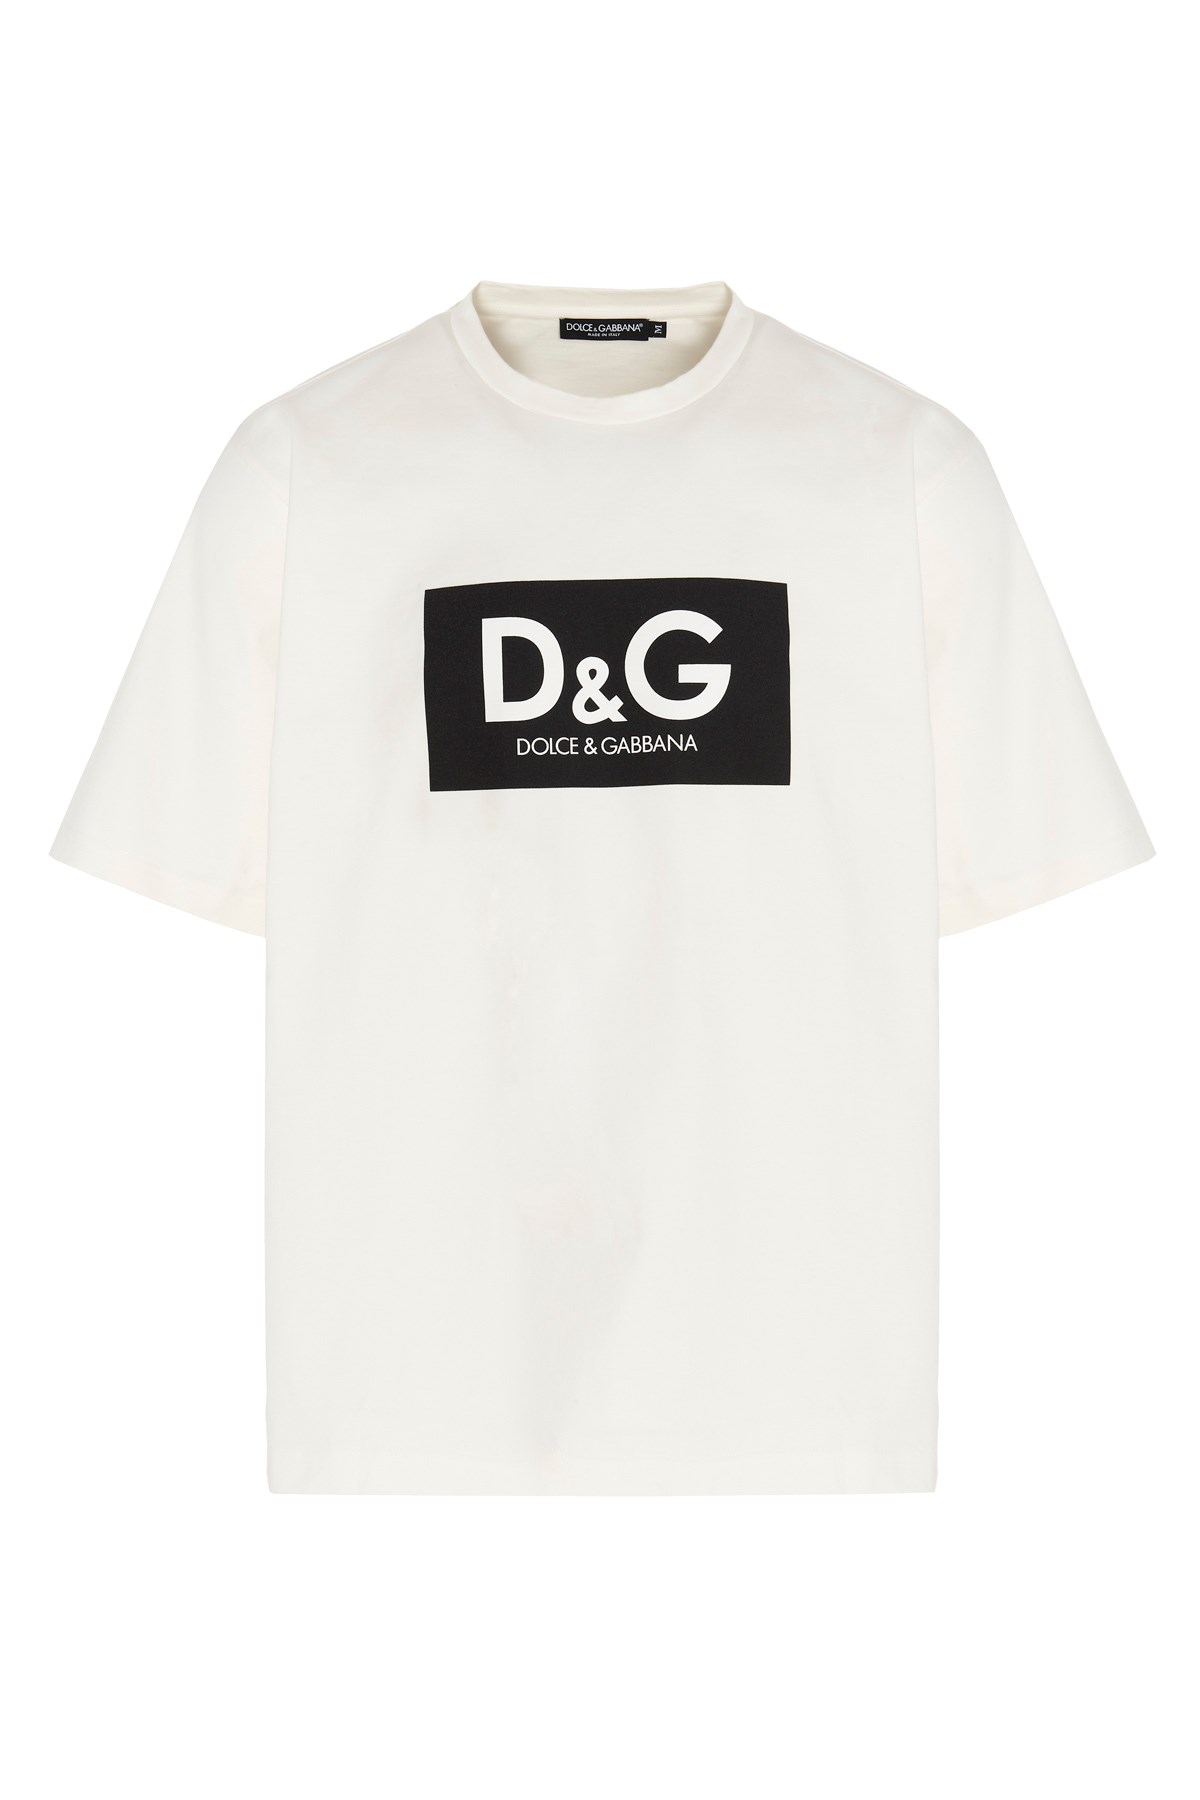 DOLCE & GABBANA Logo Print T-Shirt